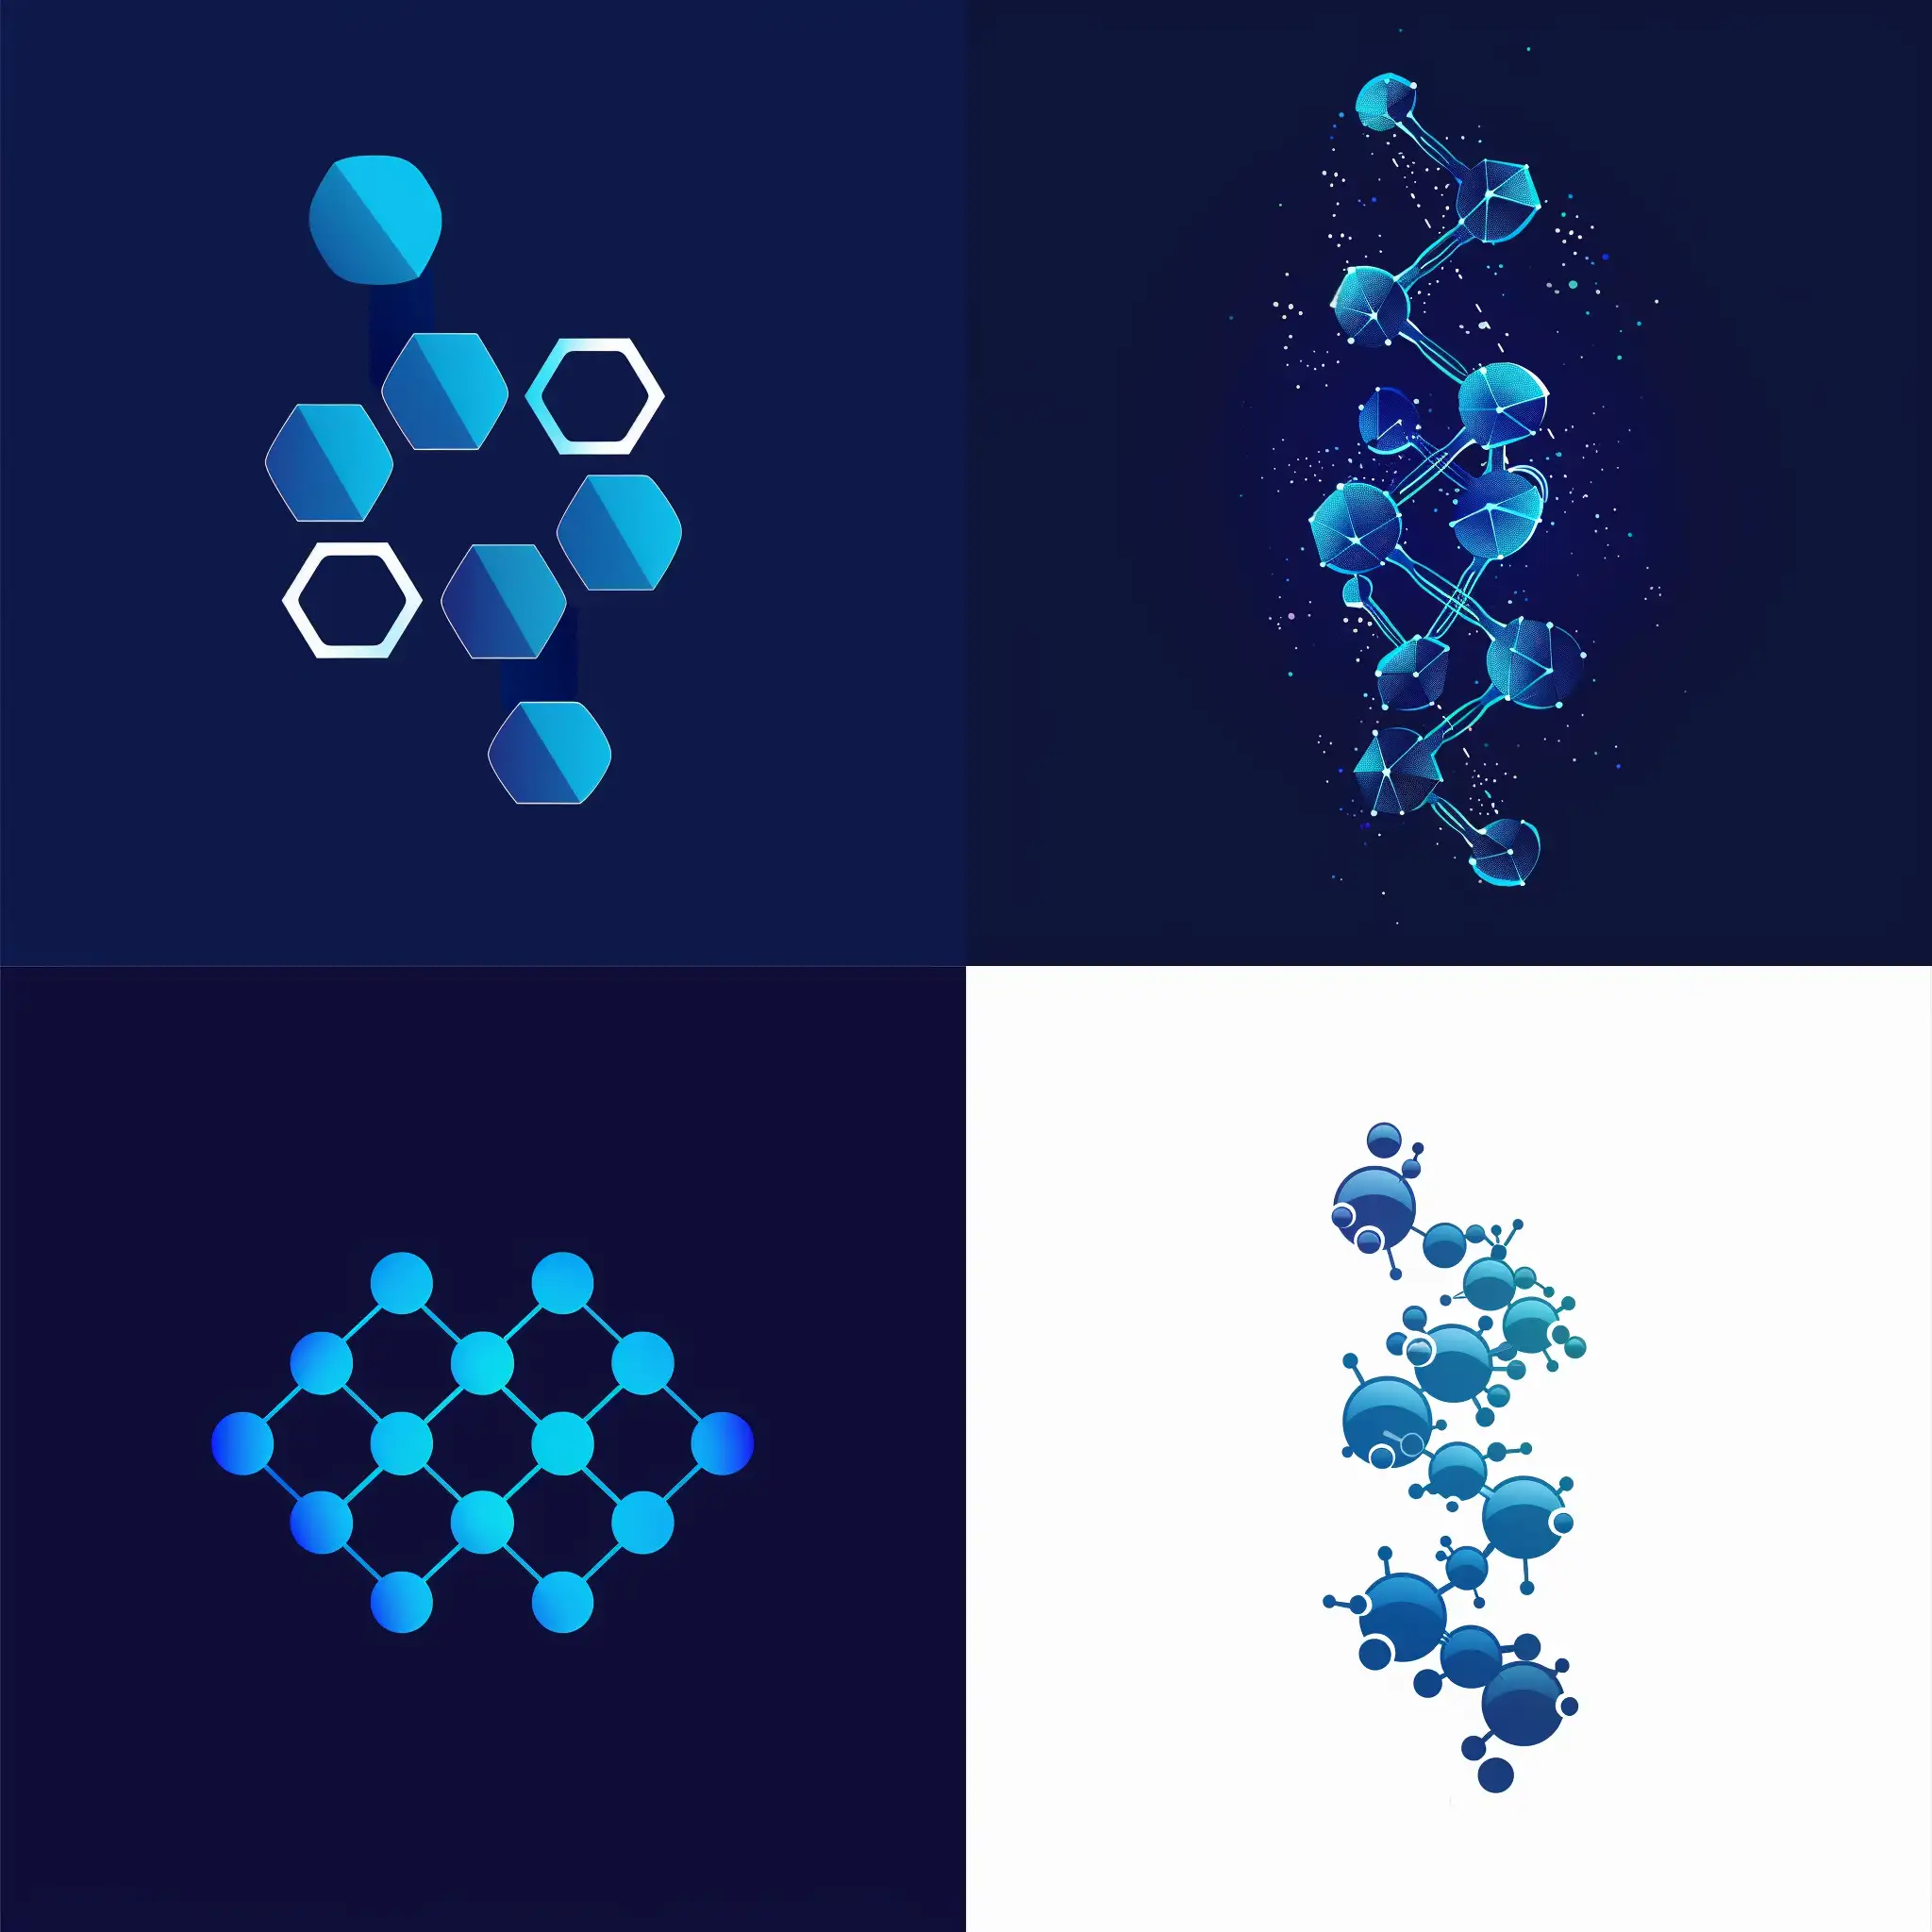 логотип, векторная графика, синий цвет, космос представлен как цепочка молекул